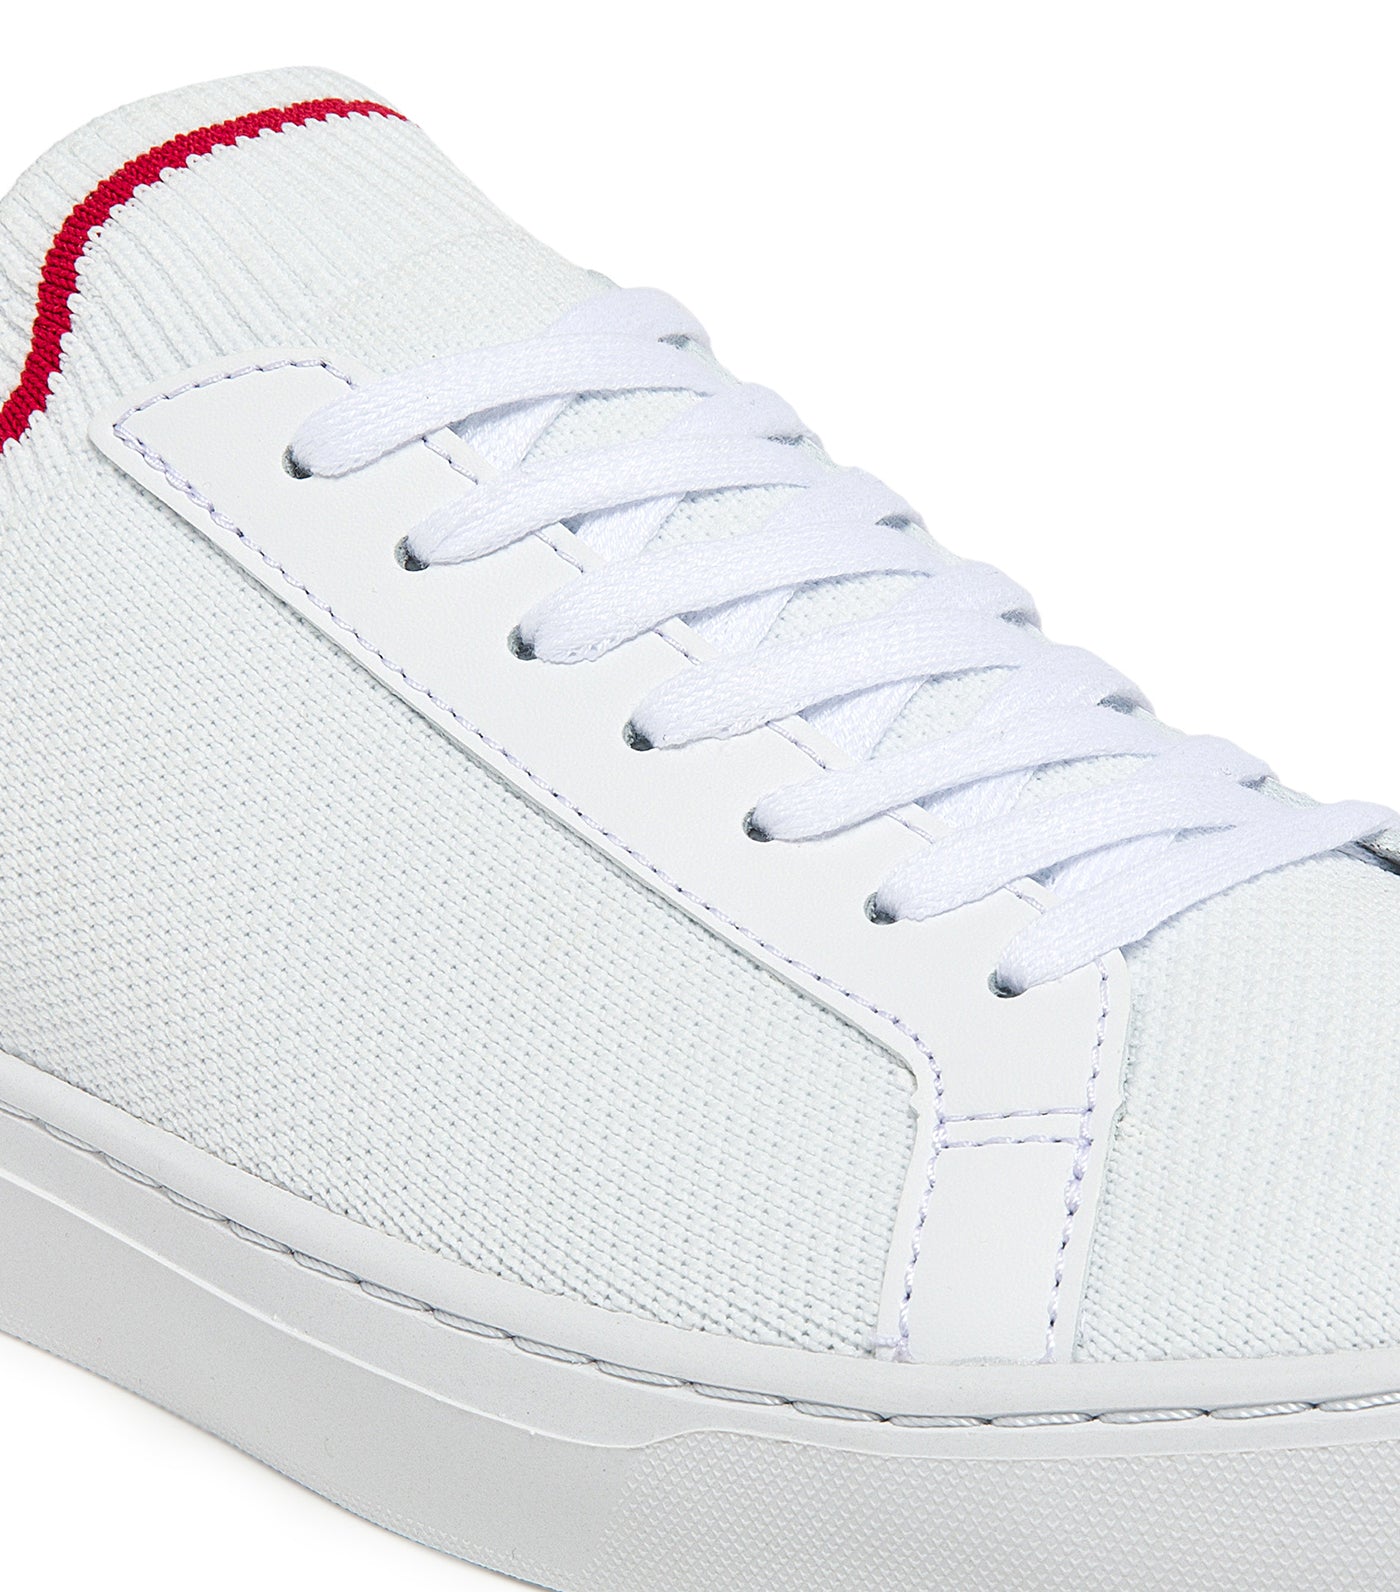 Men's La Piquée Textile Tricolor Sneakers White/Navy/Red